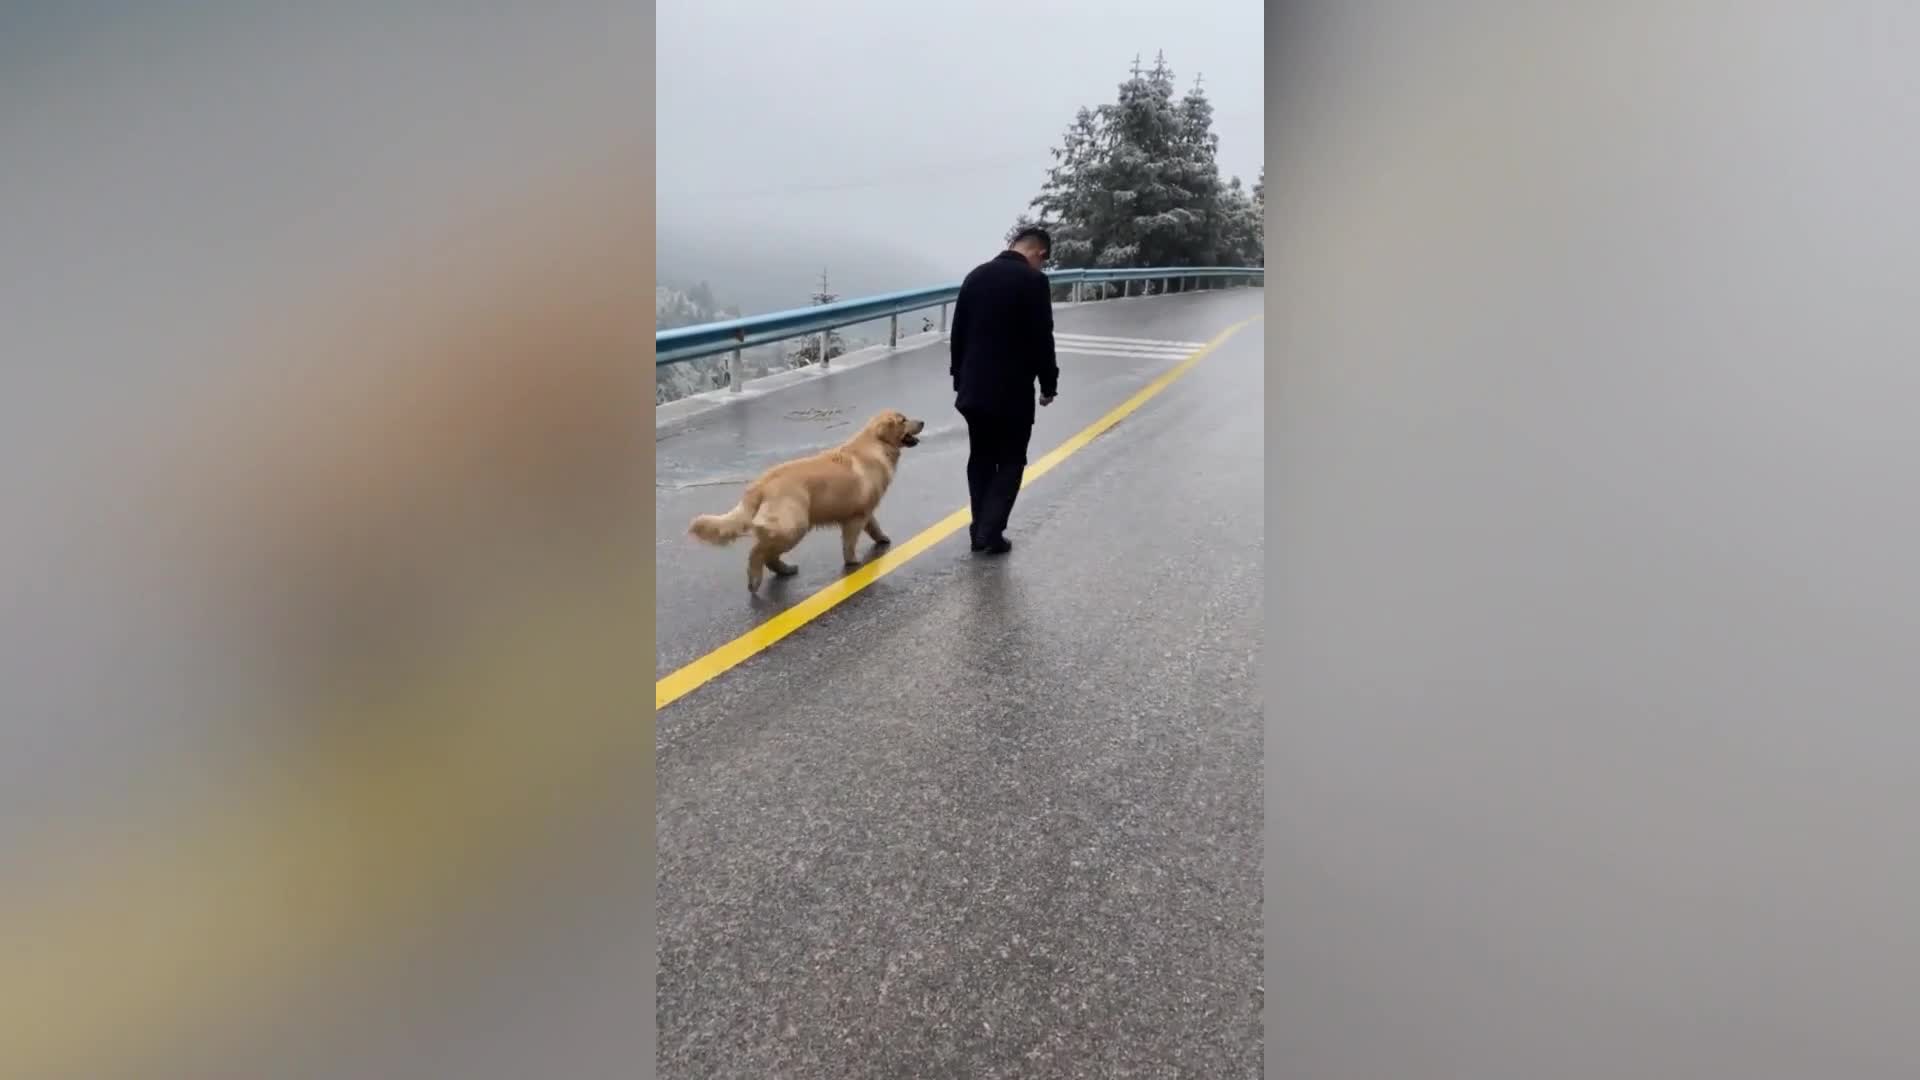 Vì quá lạnh, chó cưng trượt chân lia lịa trên đường đóng băng